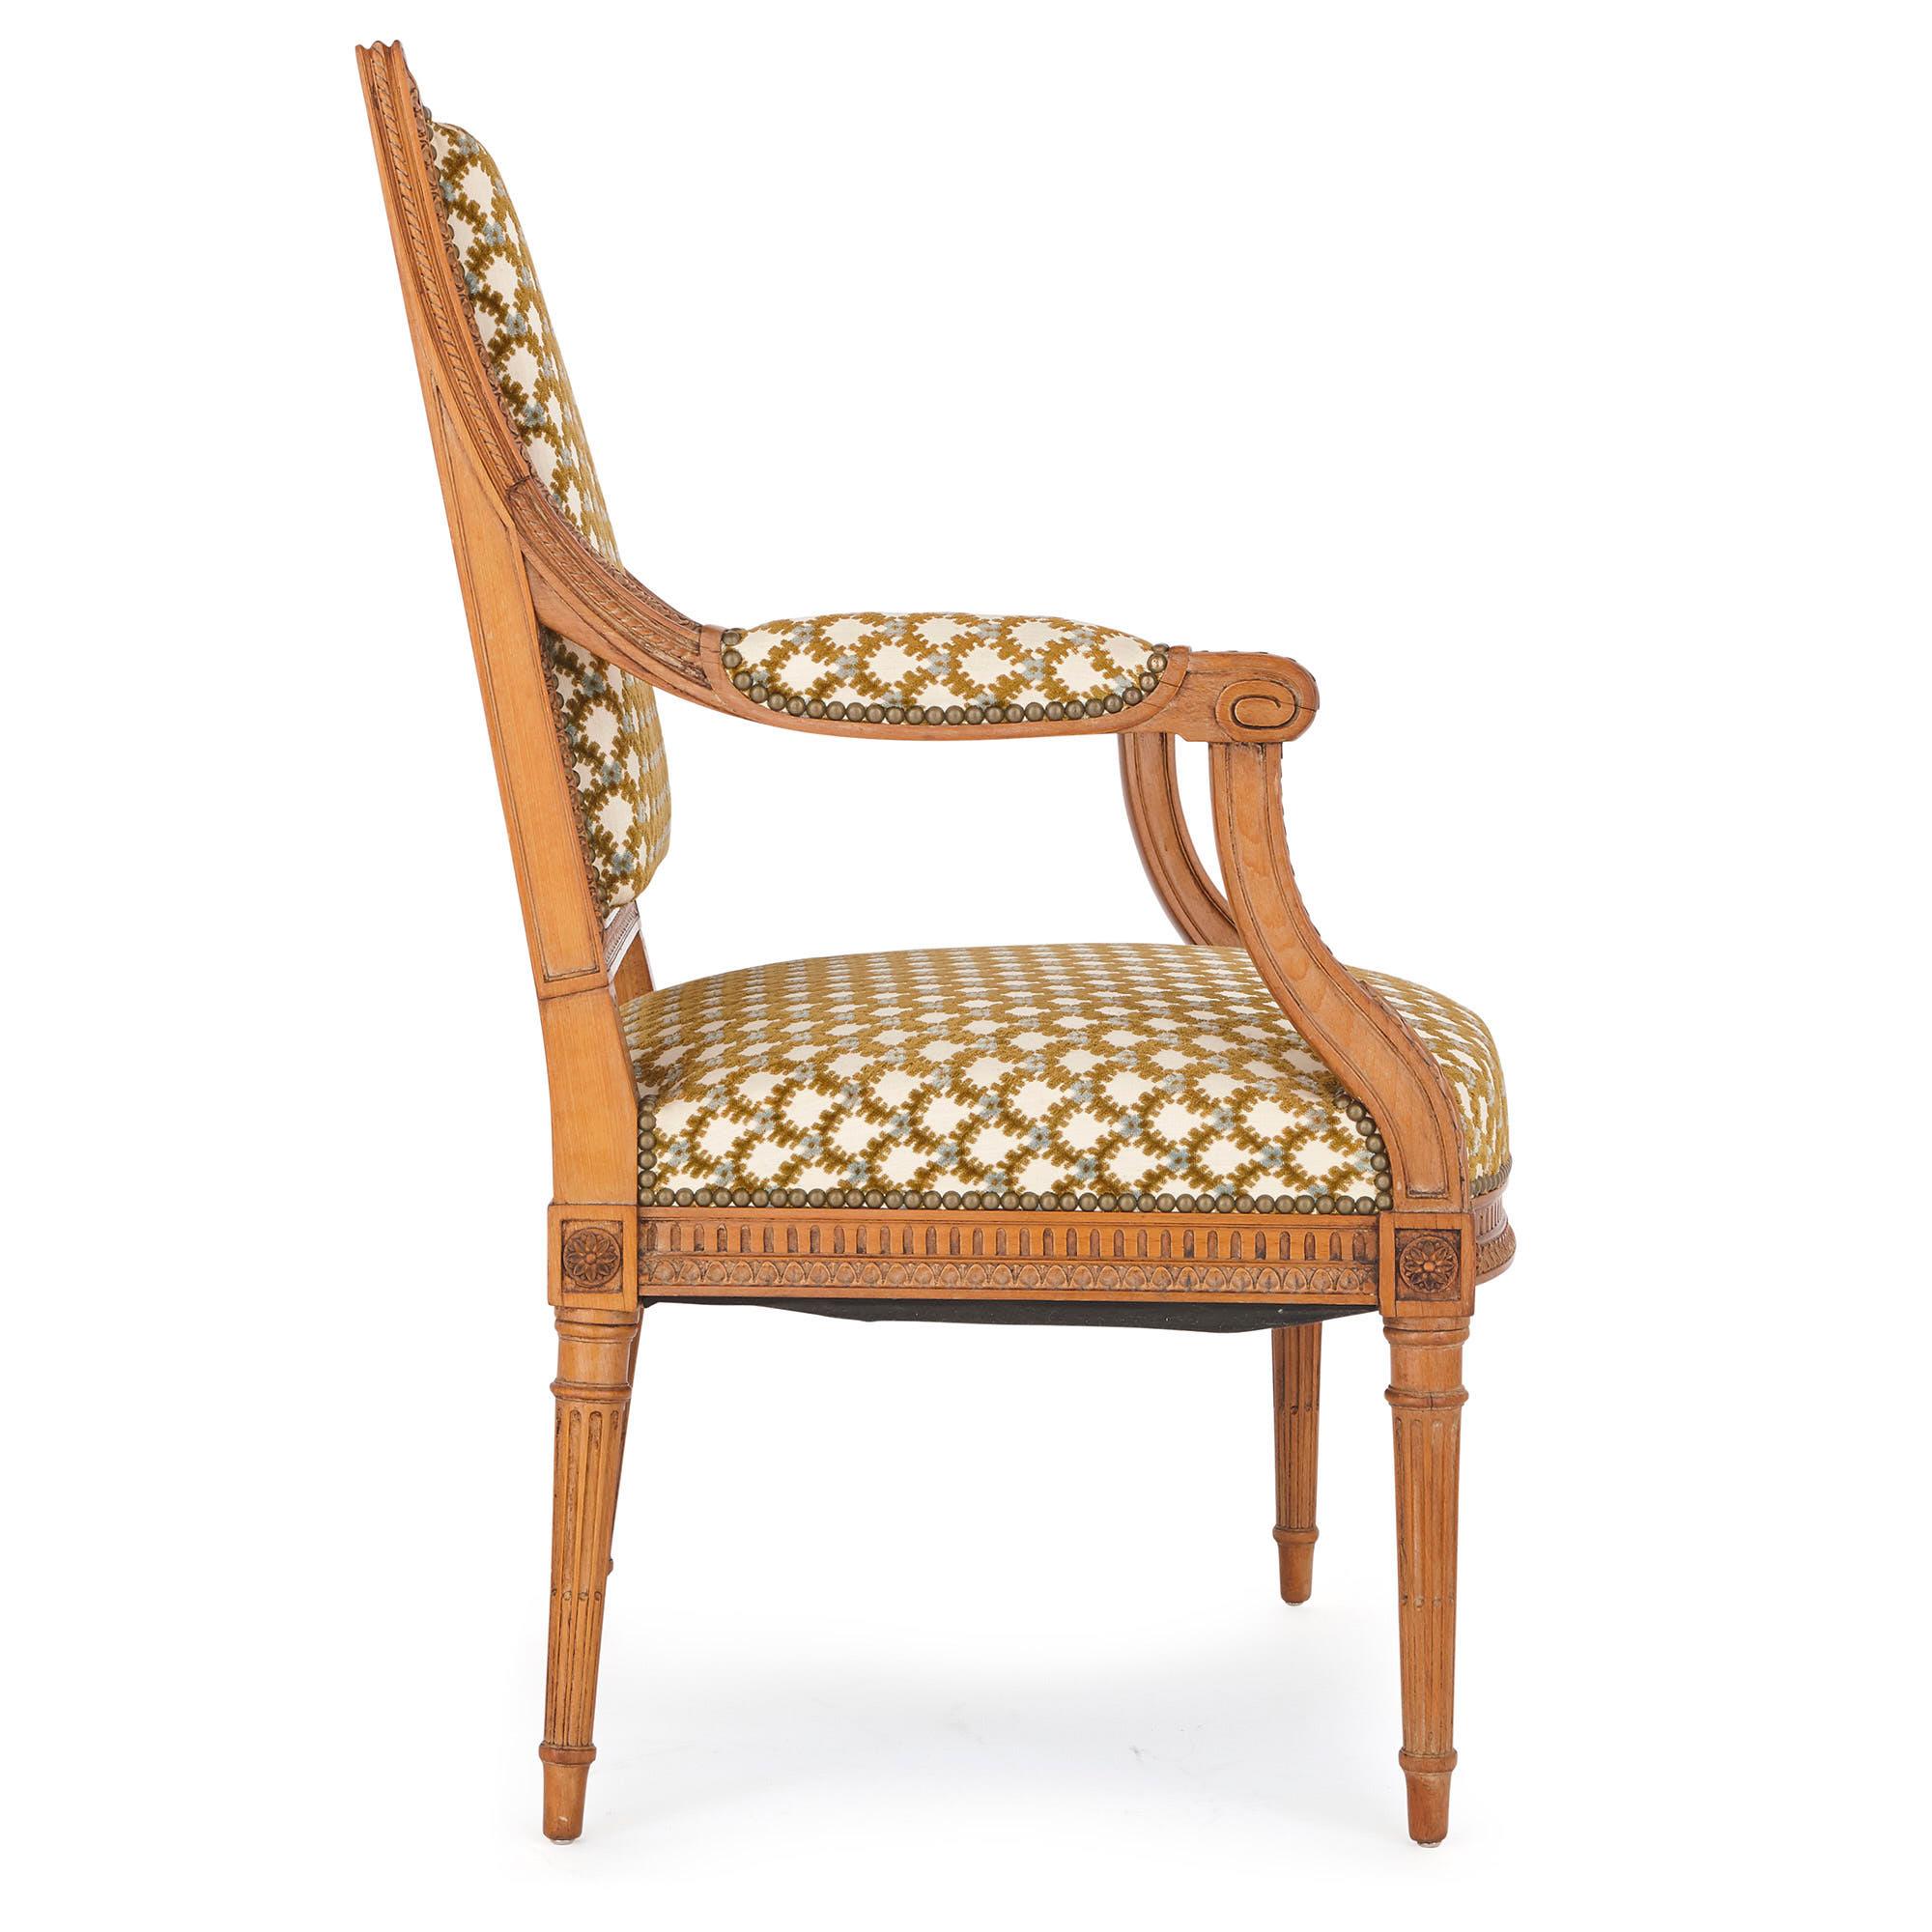 Dieser Sessel ist ein feines Stück Handwerkskunst, vollendet von dem wohl bedeutendsten Handwerker des späten 19. und frühen 20. Jahrhunderts, François Linke. Die Rückenlehne des Stuhls ist mit 